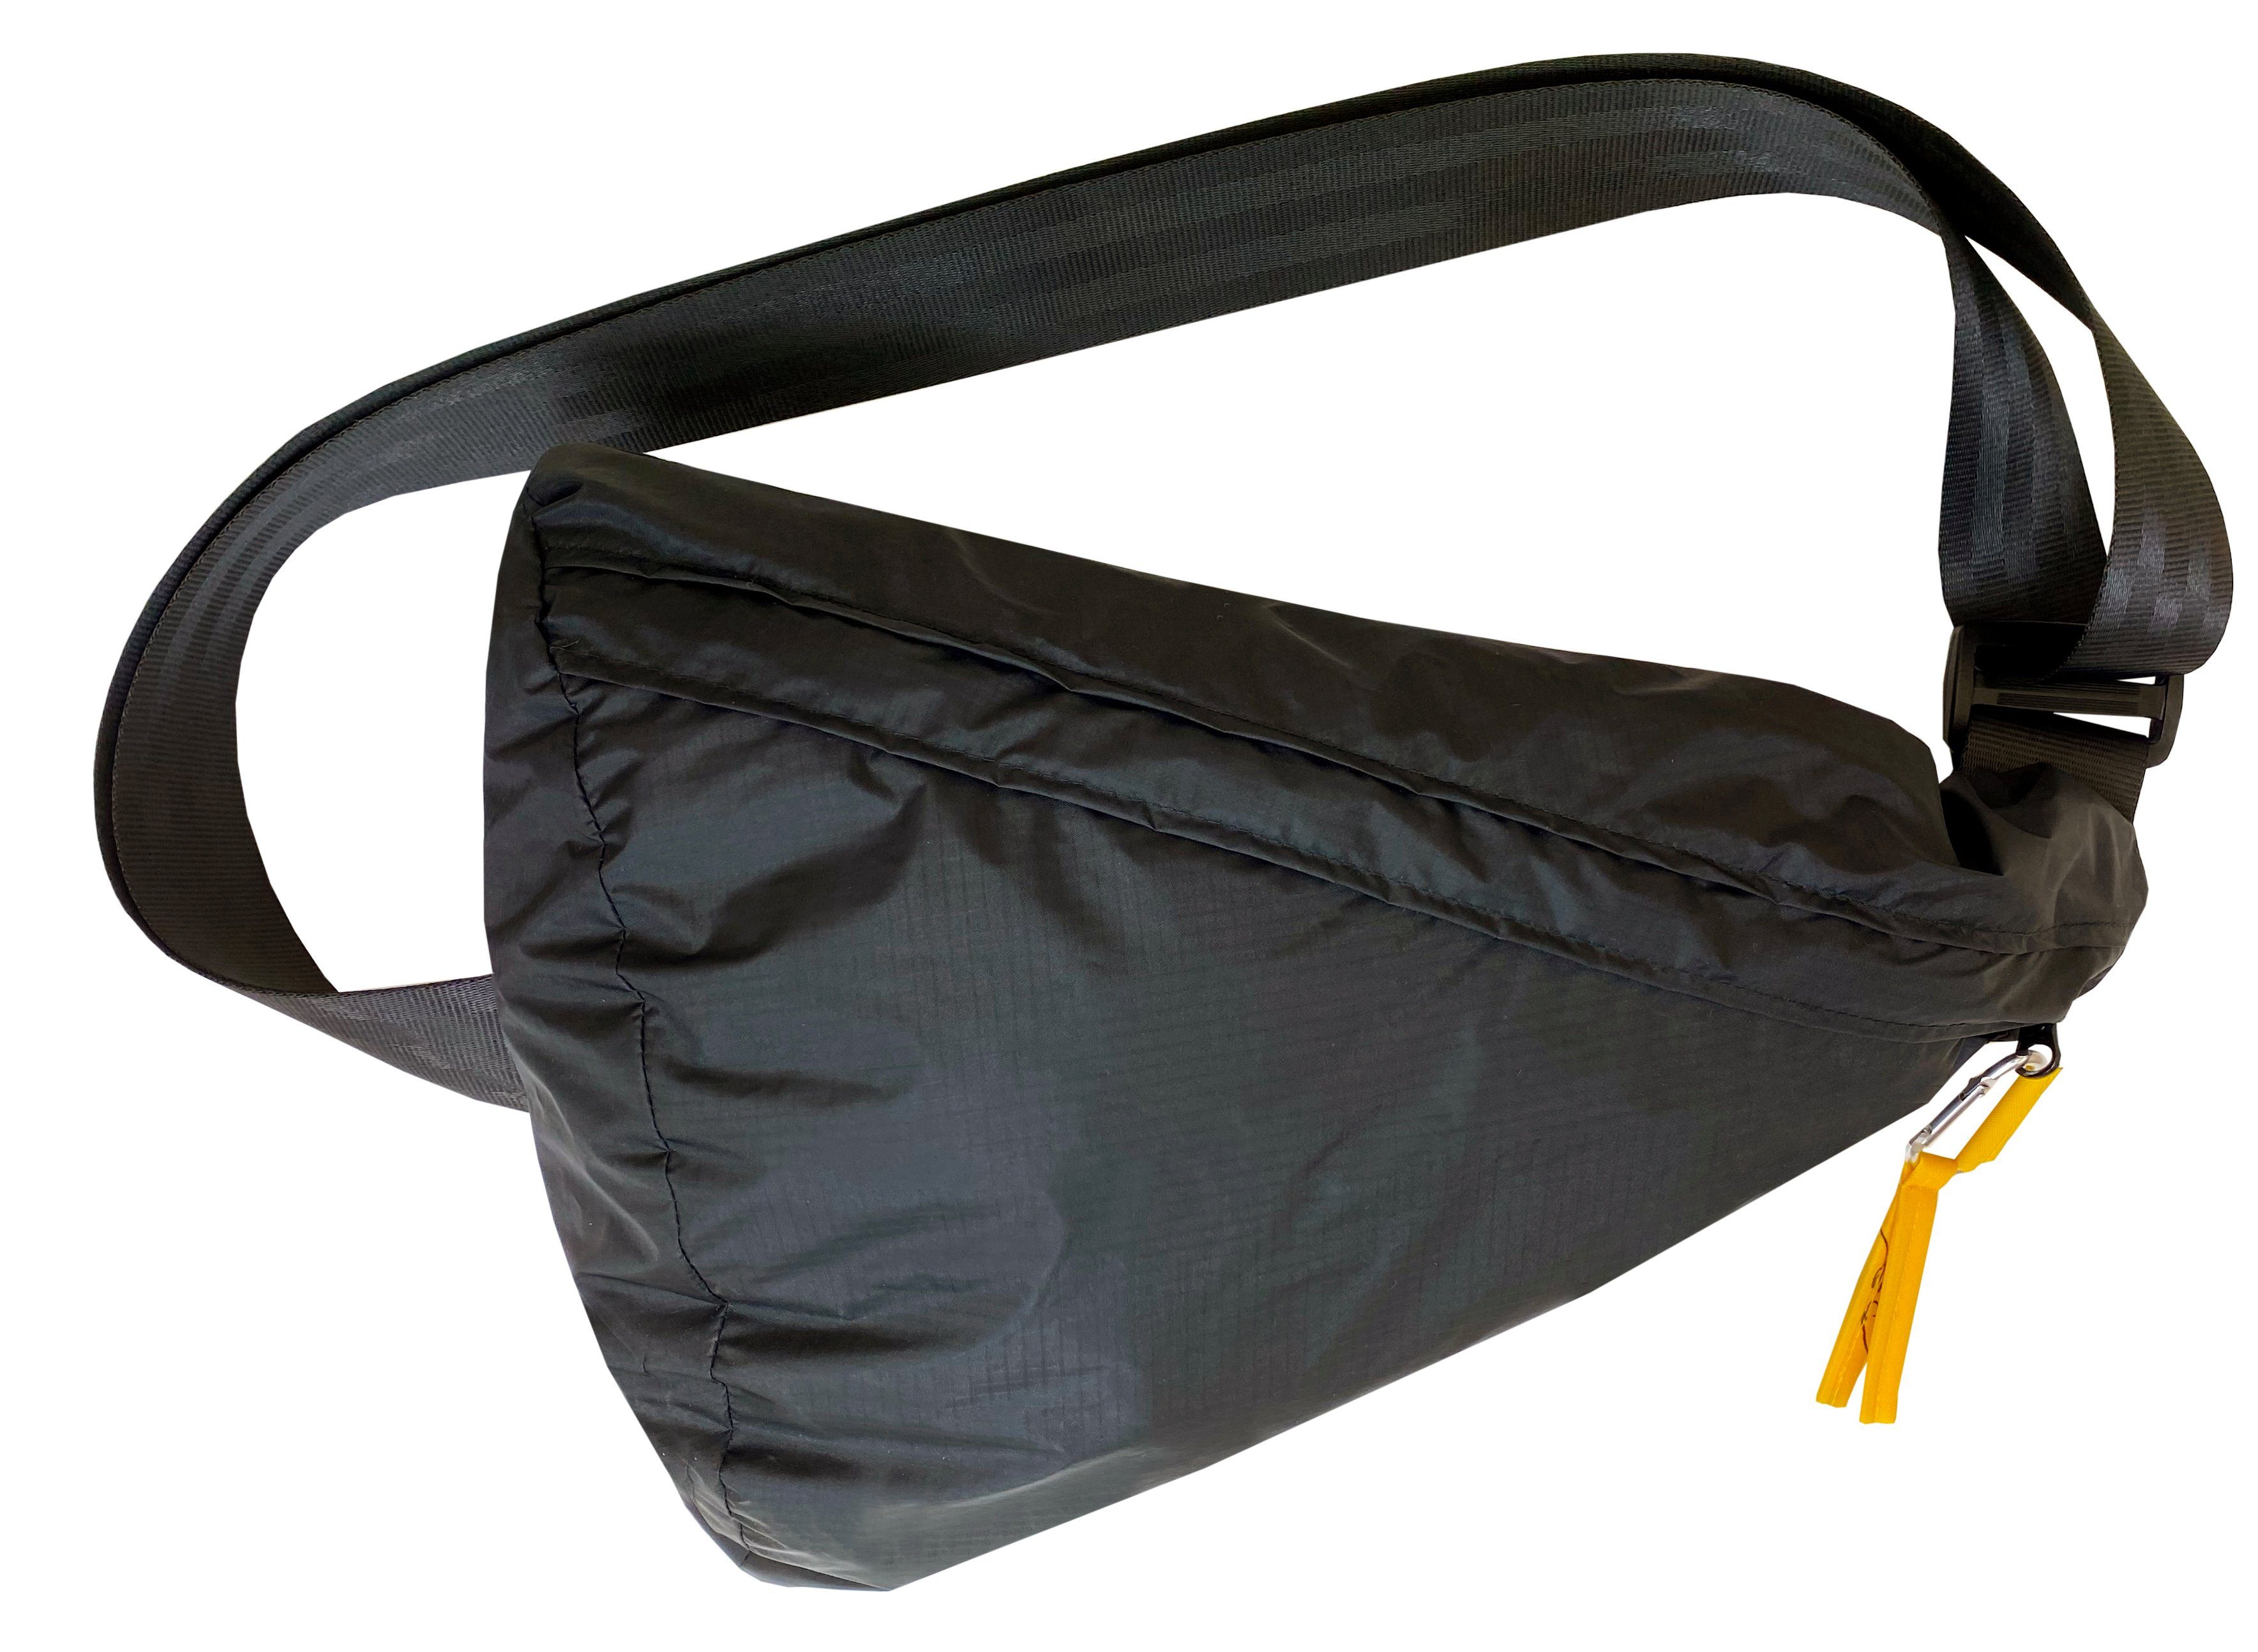 Triangle praktischen Umhängetasche Bag, to Life Bag Bravo im Design